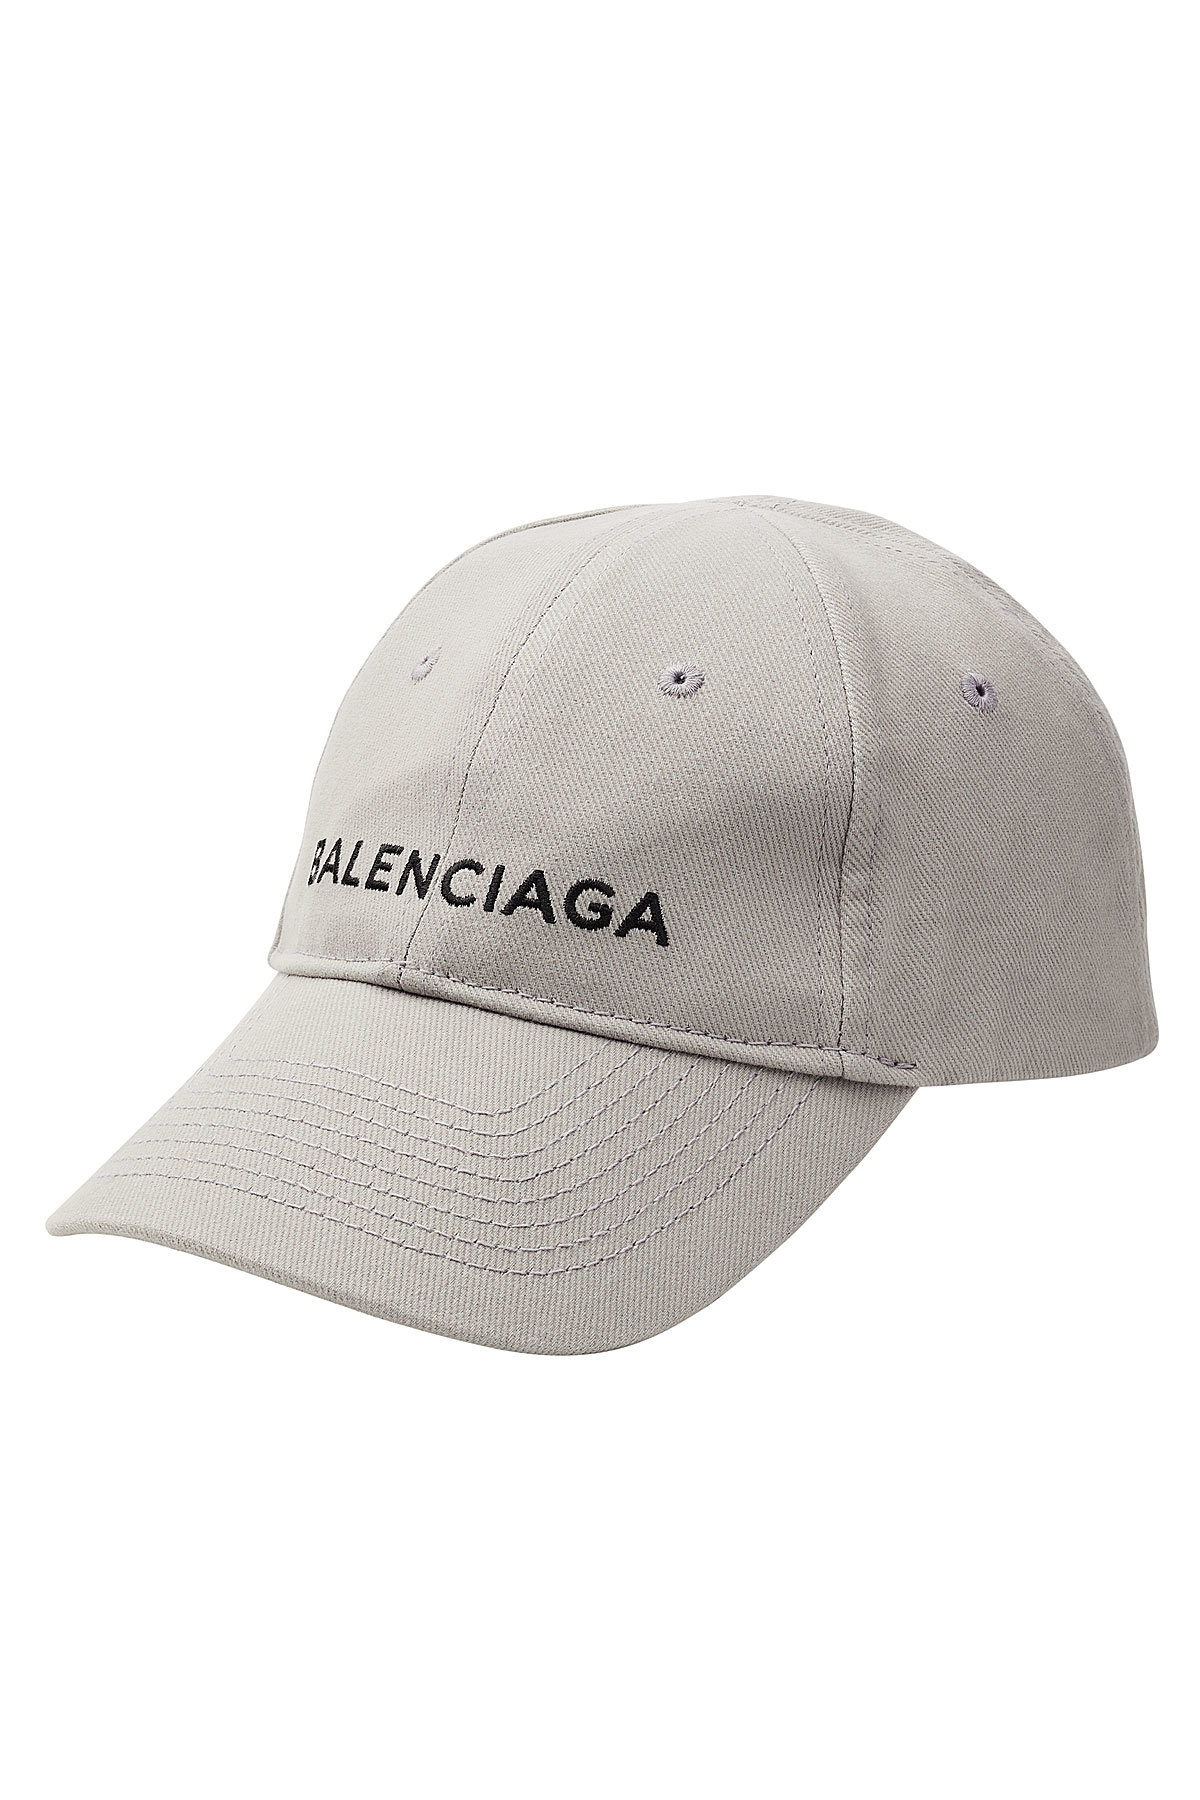 Balenciaga - New Baseball Cap